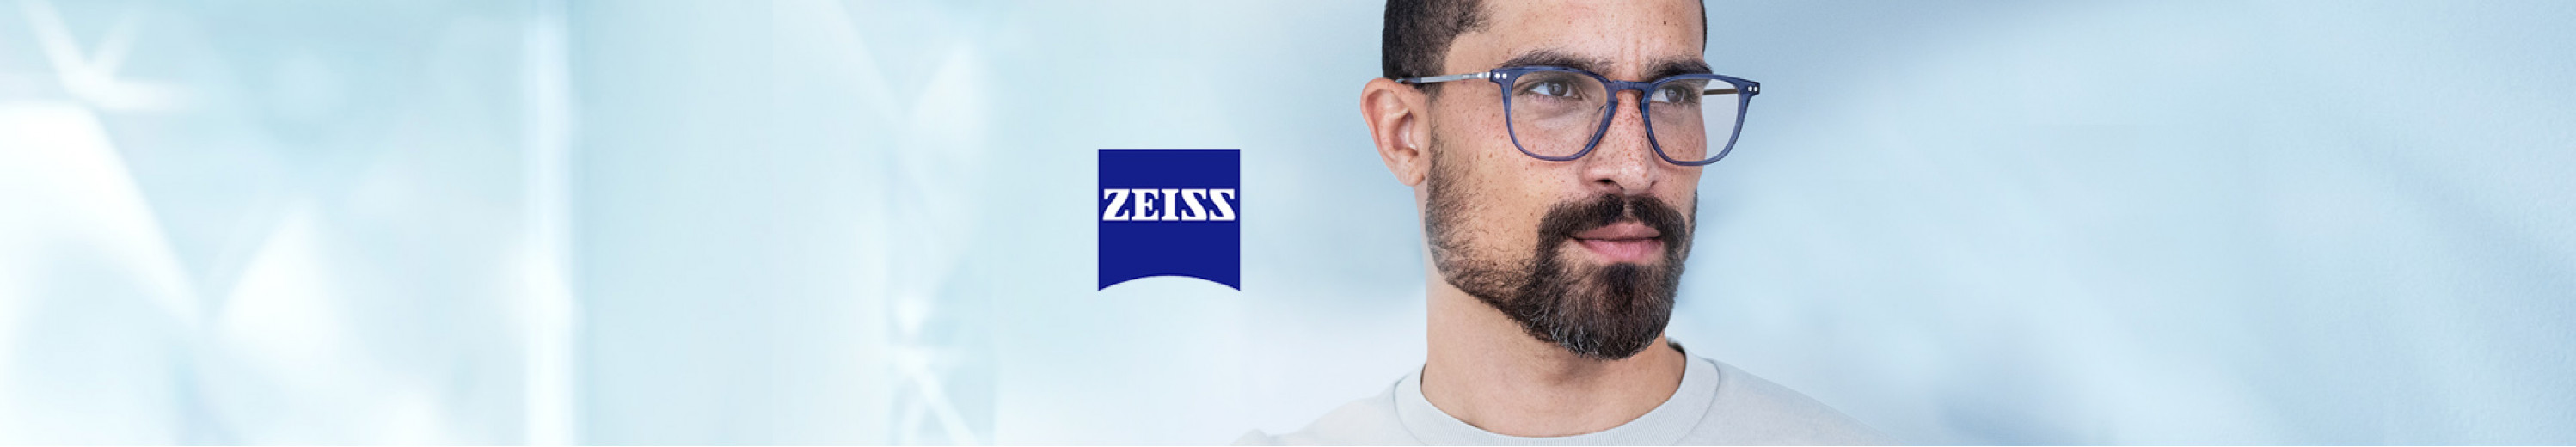 Zeiss Eyeglasses for Men